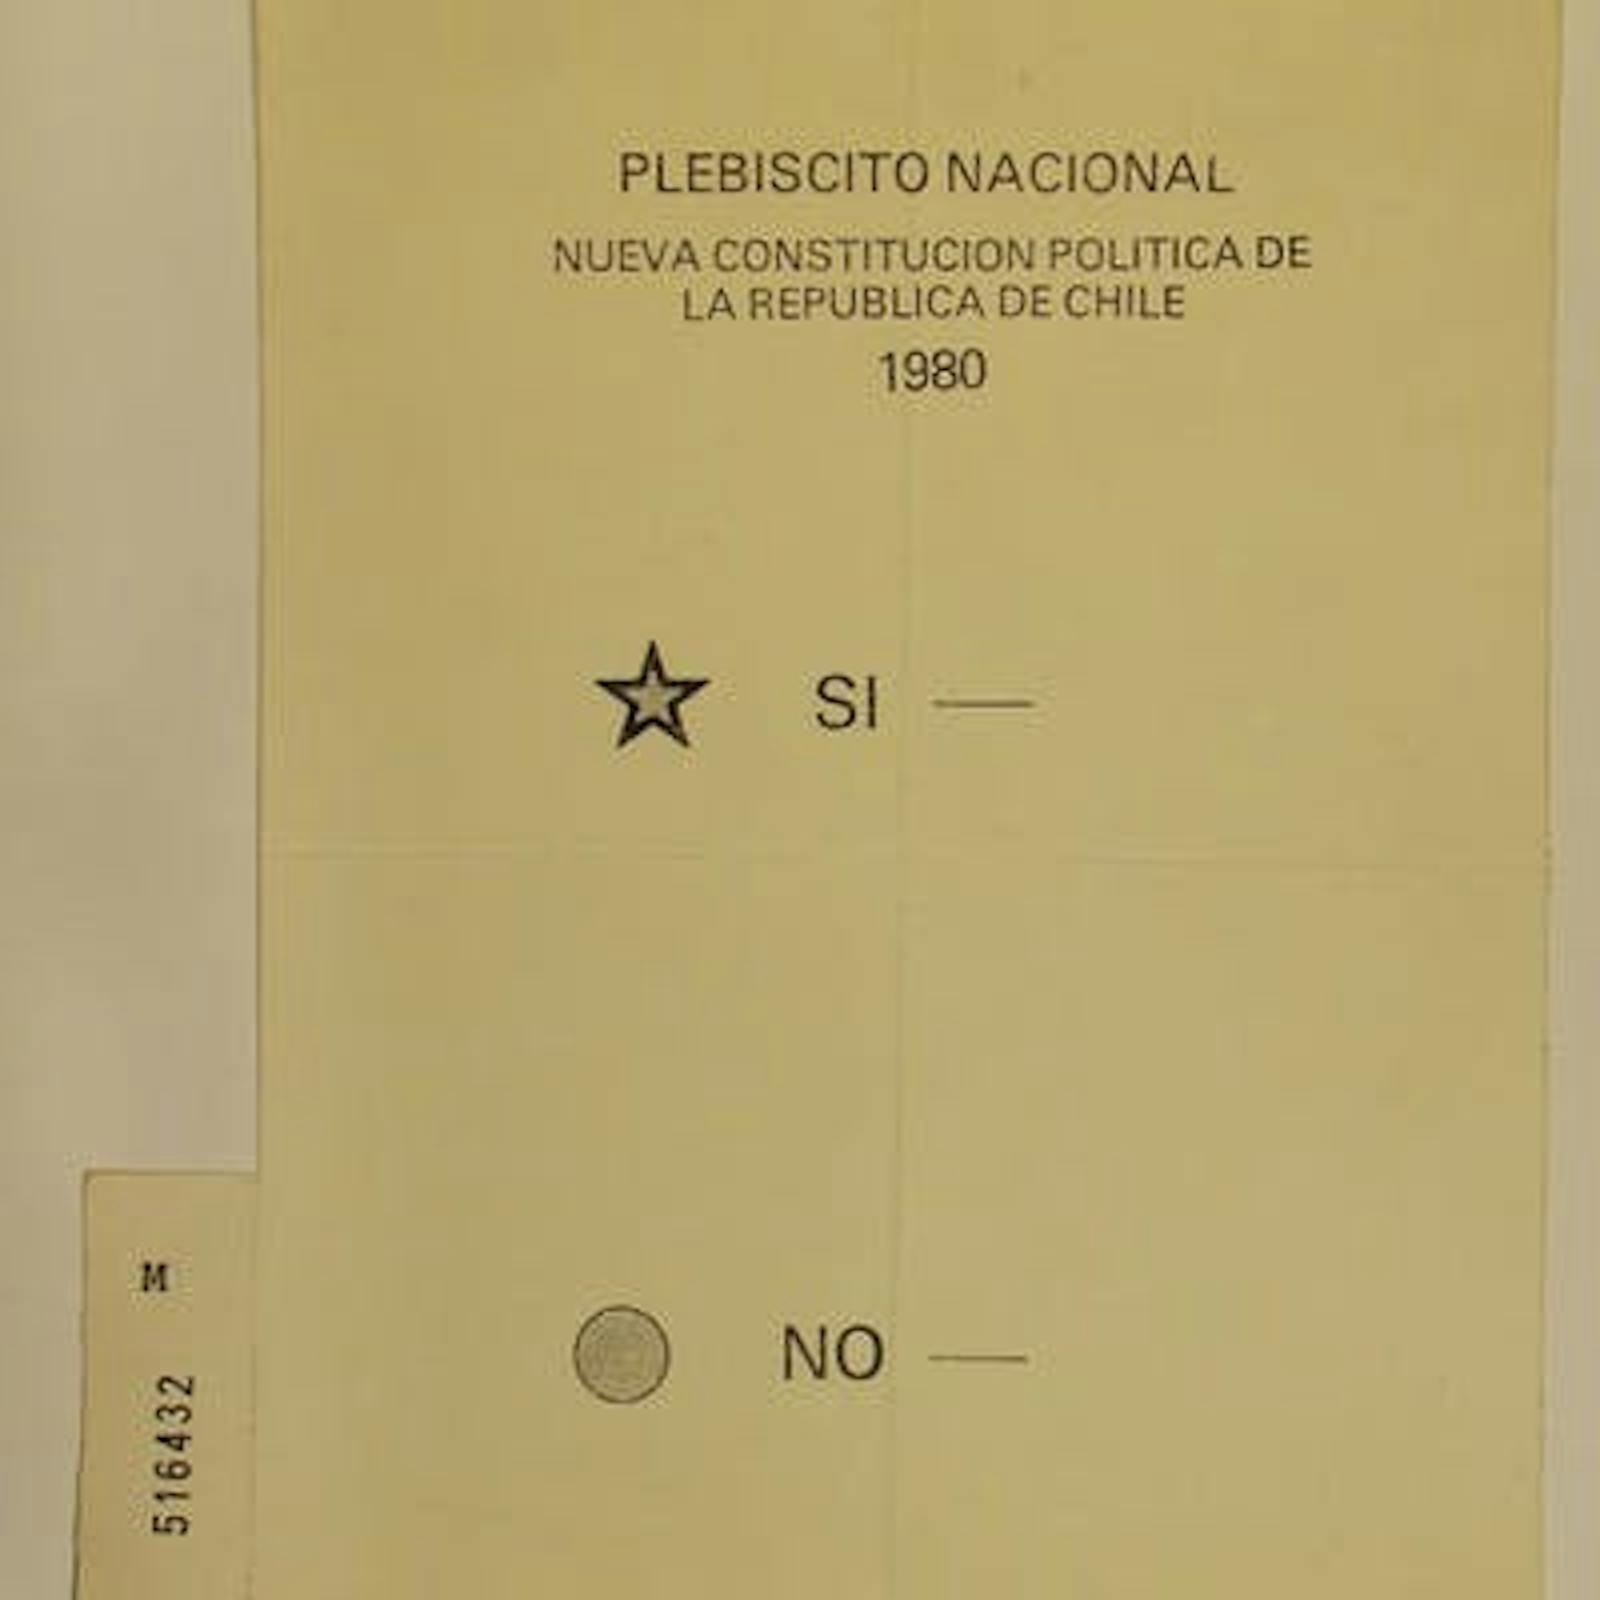 La Historia de las Constituciones Chilenas (Parte 2)